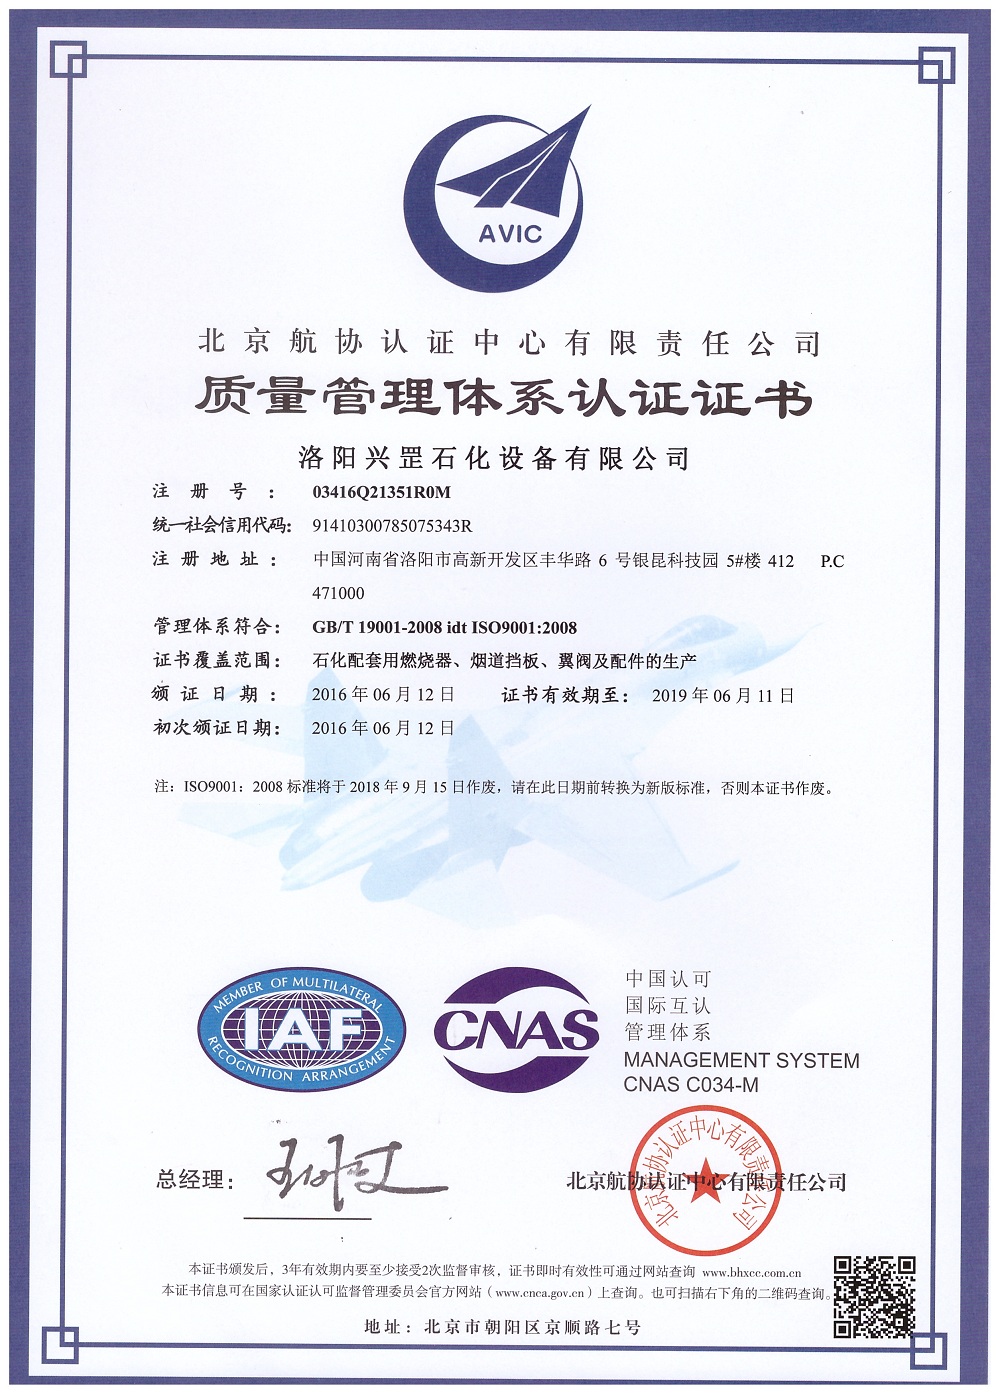 洛陽興罡石化設備有限公司ISO9001:2008質量管理體系認證證書